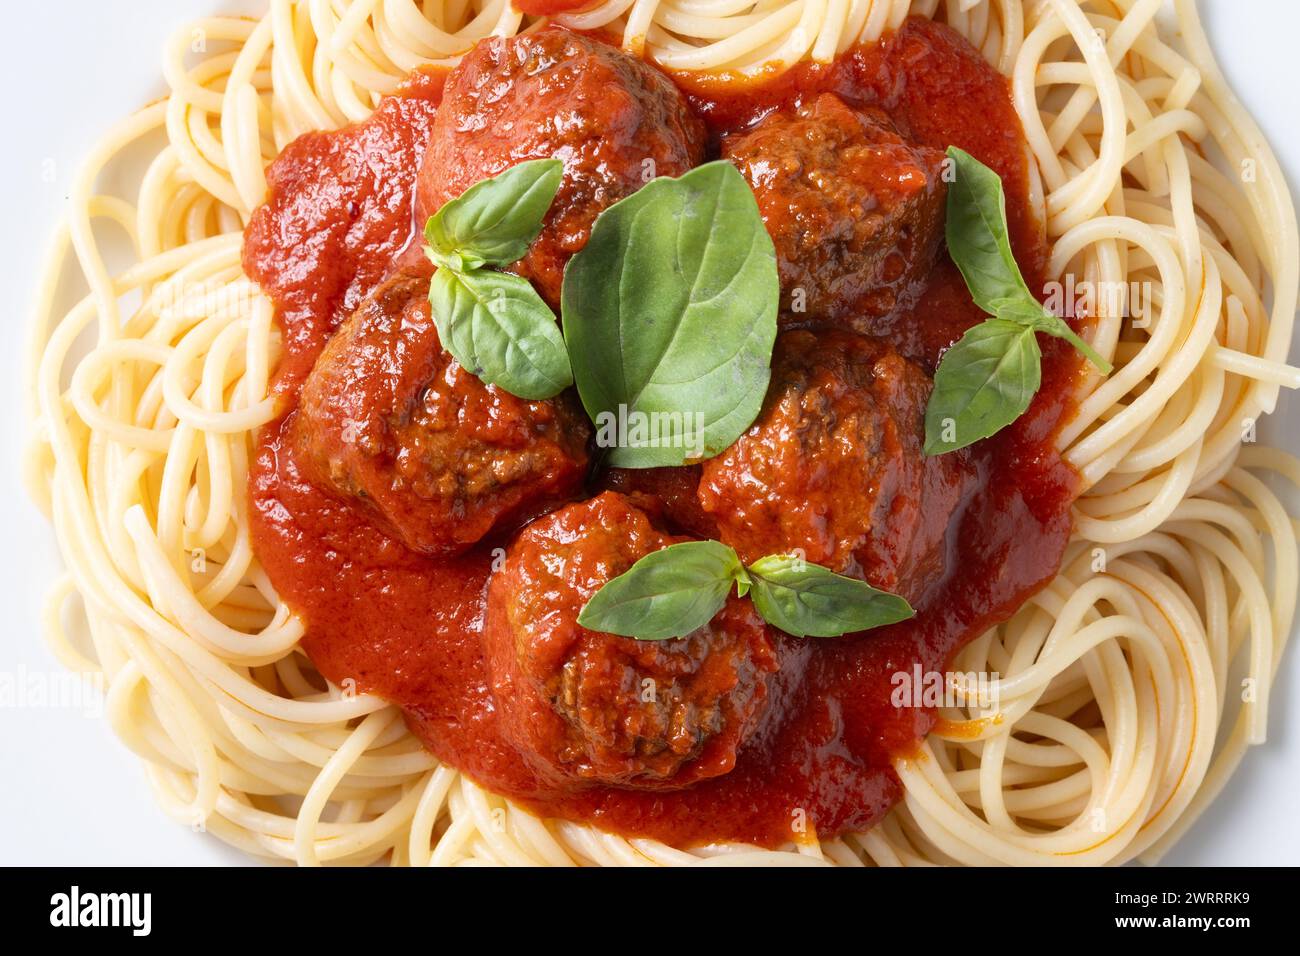 Spaghetti con le polpette di carne isolati su sfondo bianco Foto Stock